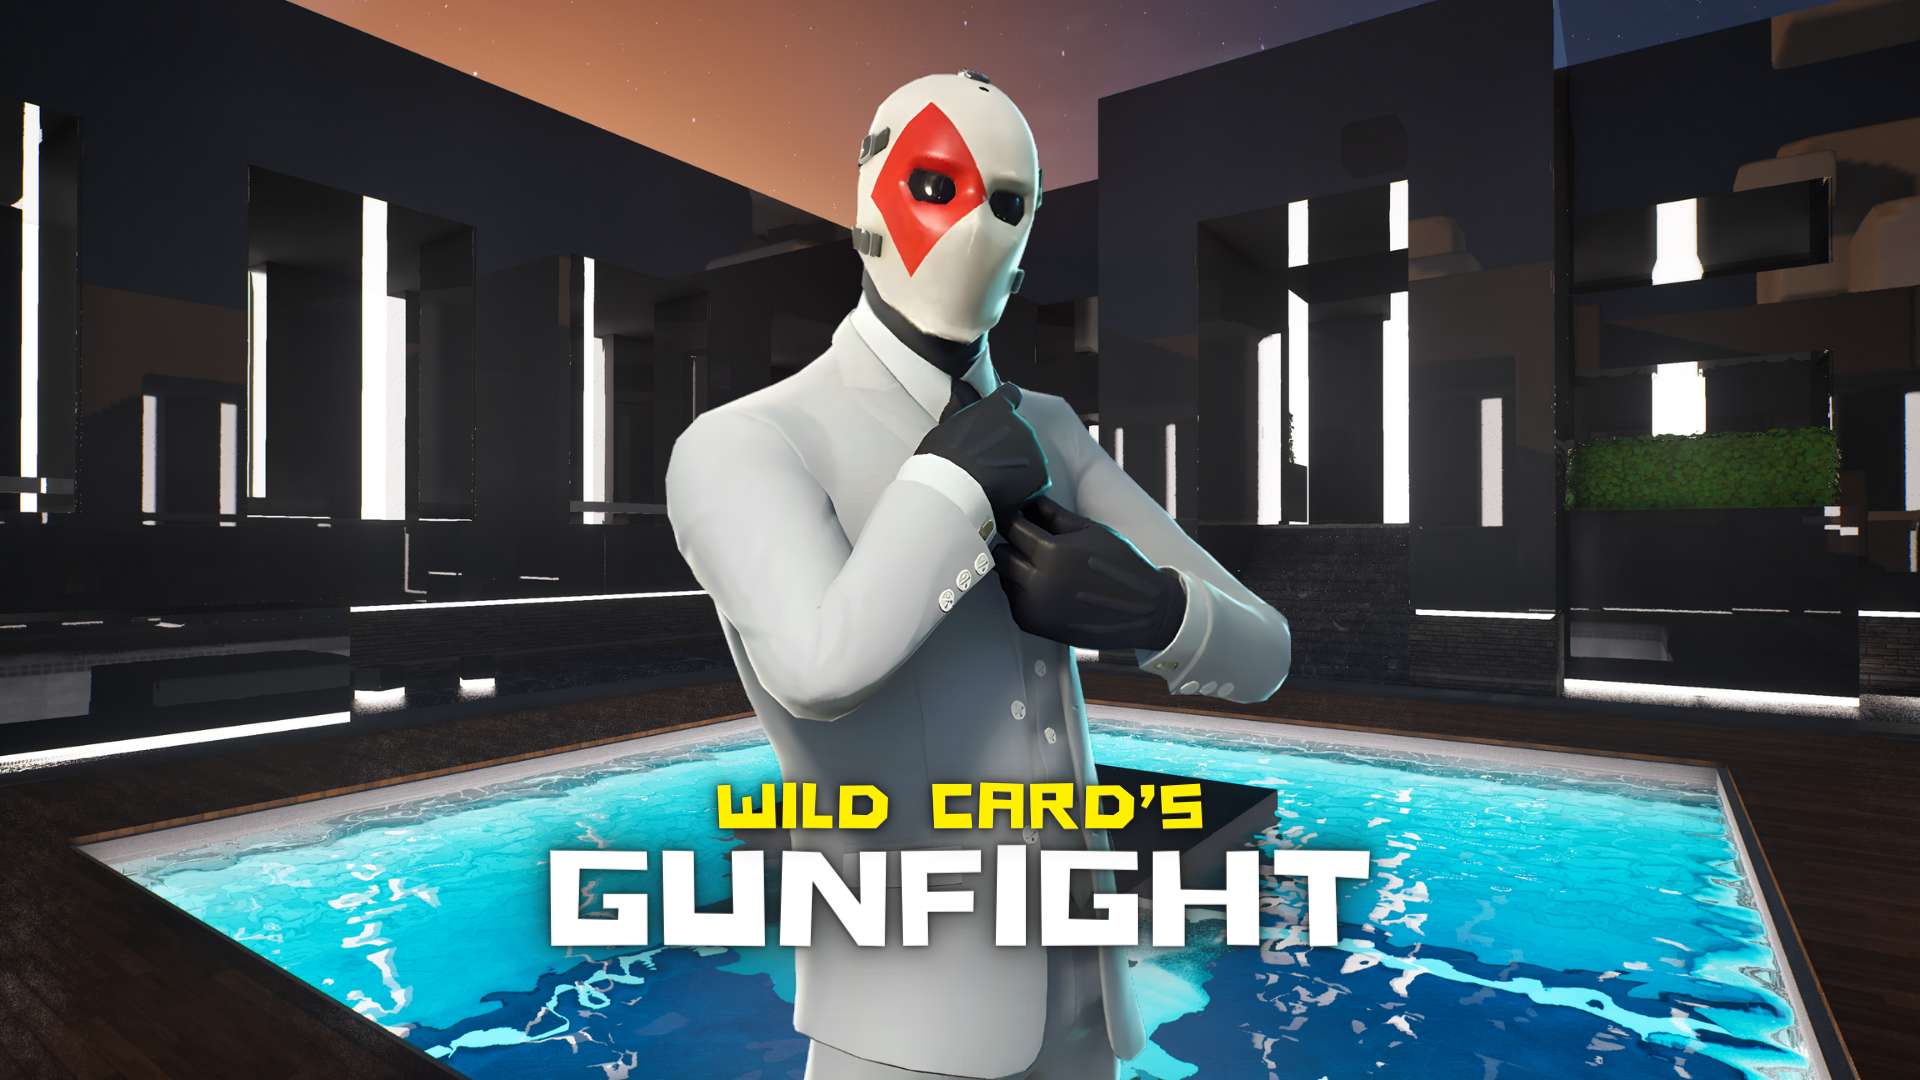 🎲 WILD CARD'S GUNFIGHT